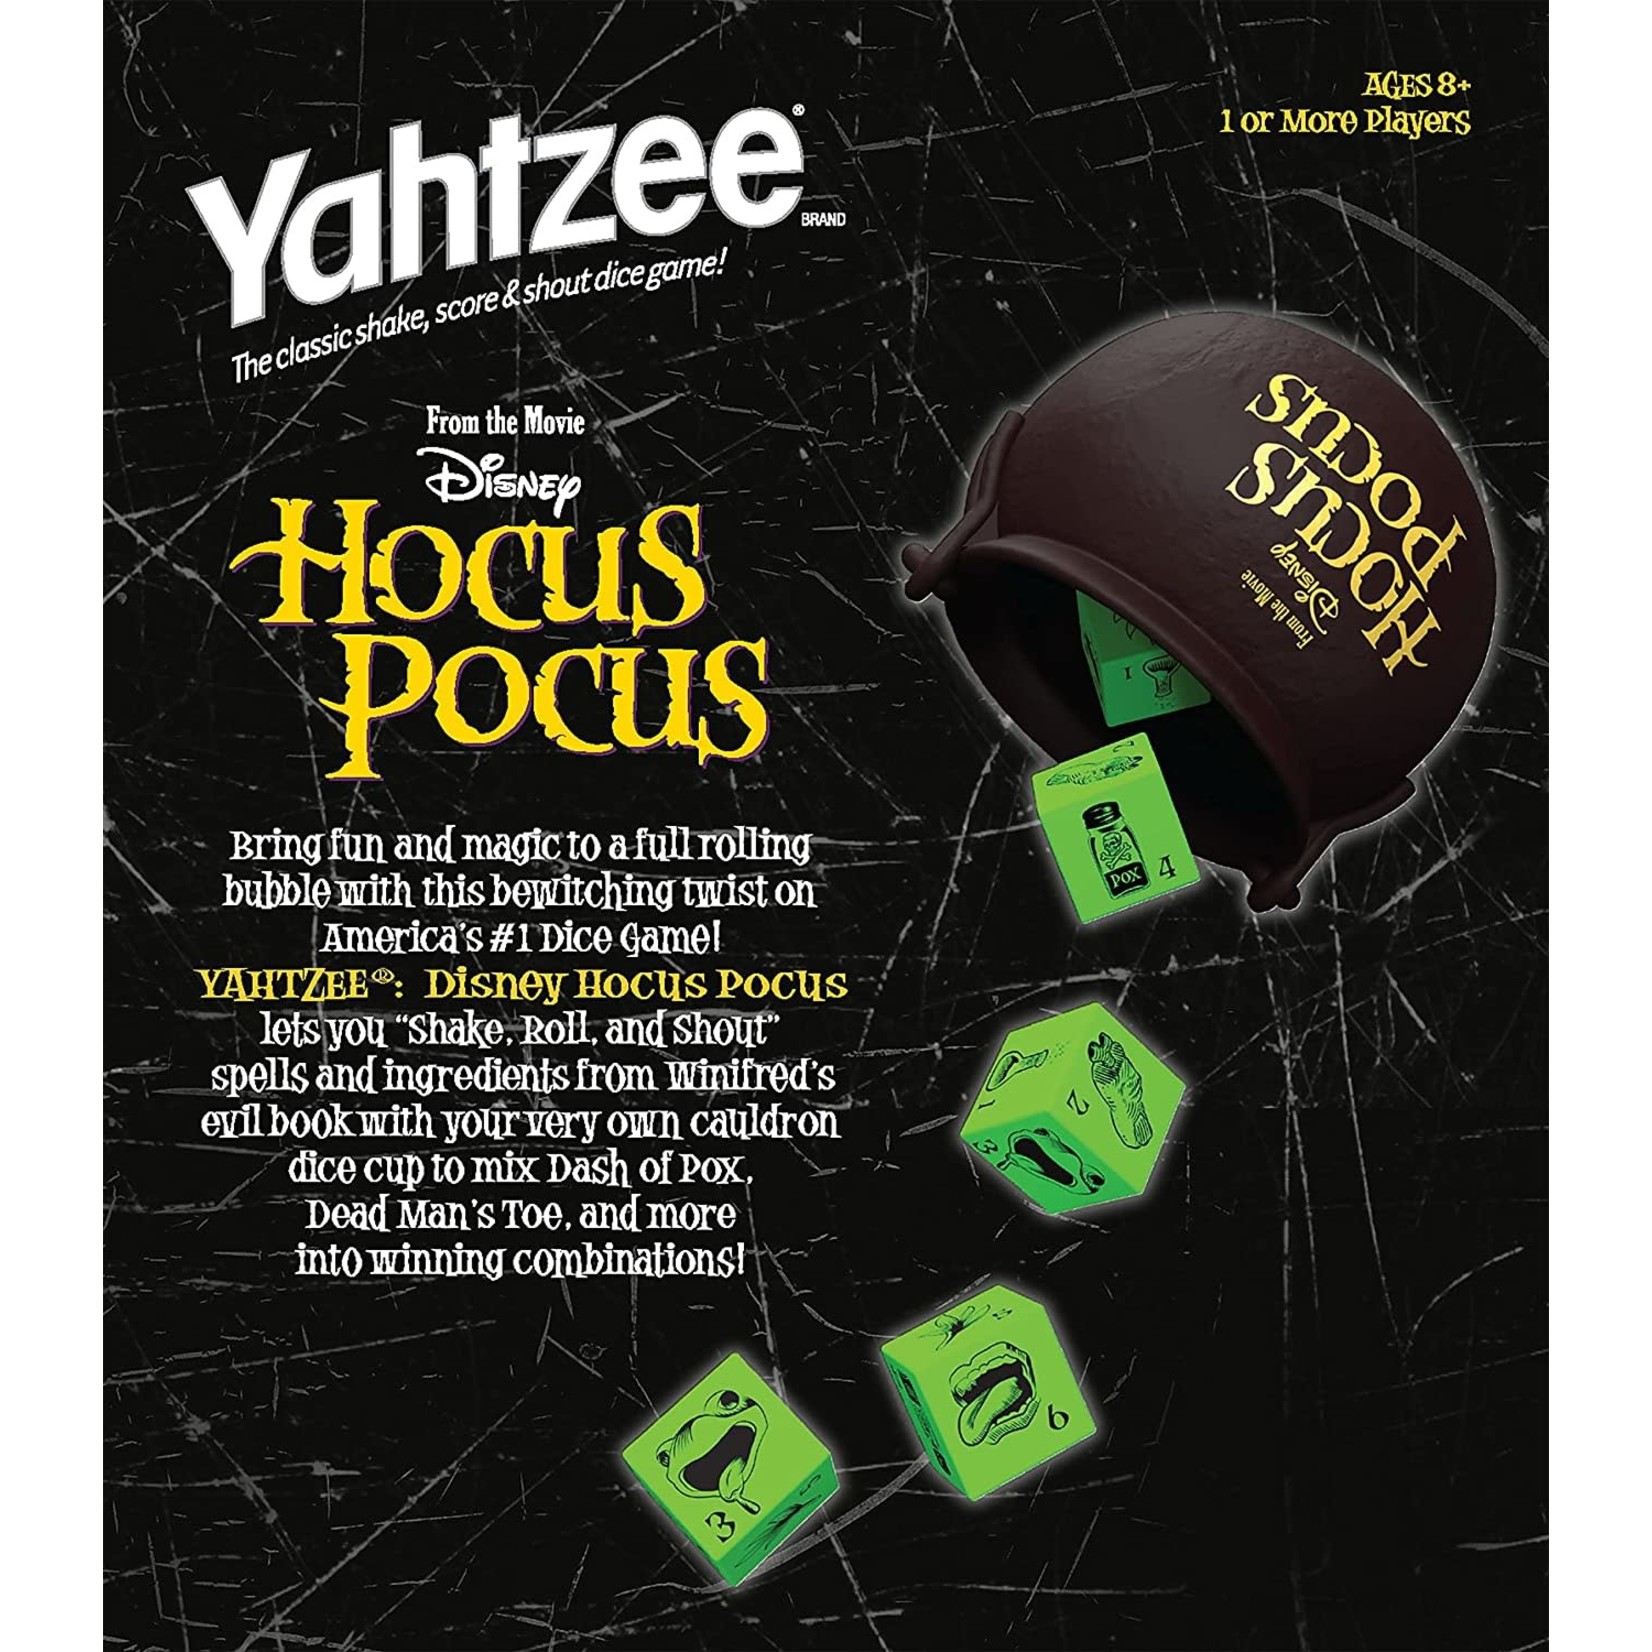 The Op Yahtzee: Hocus Pocus